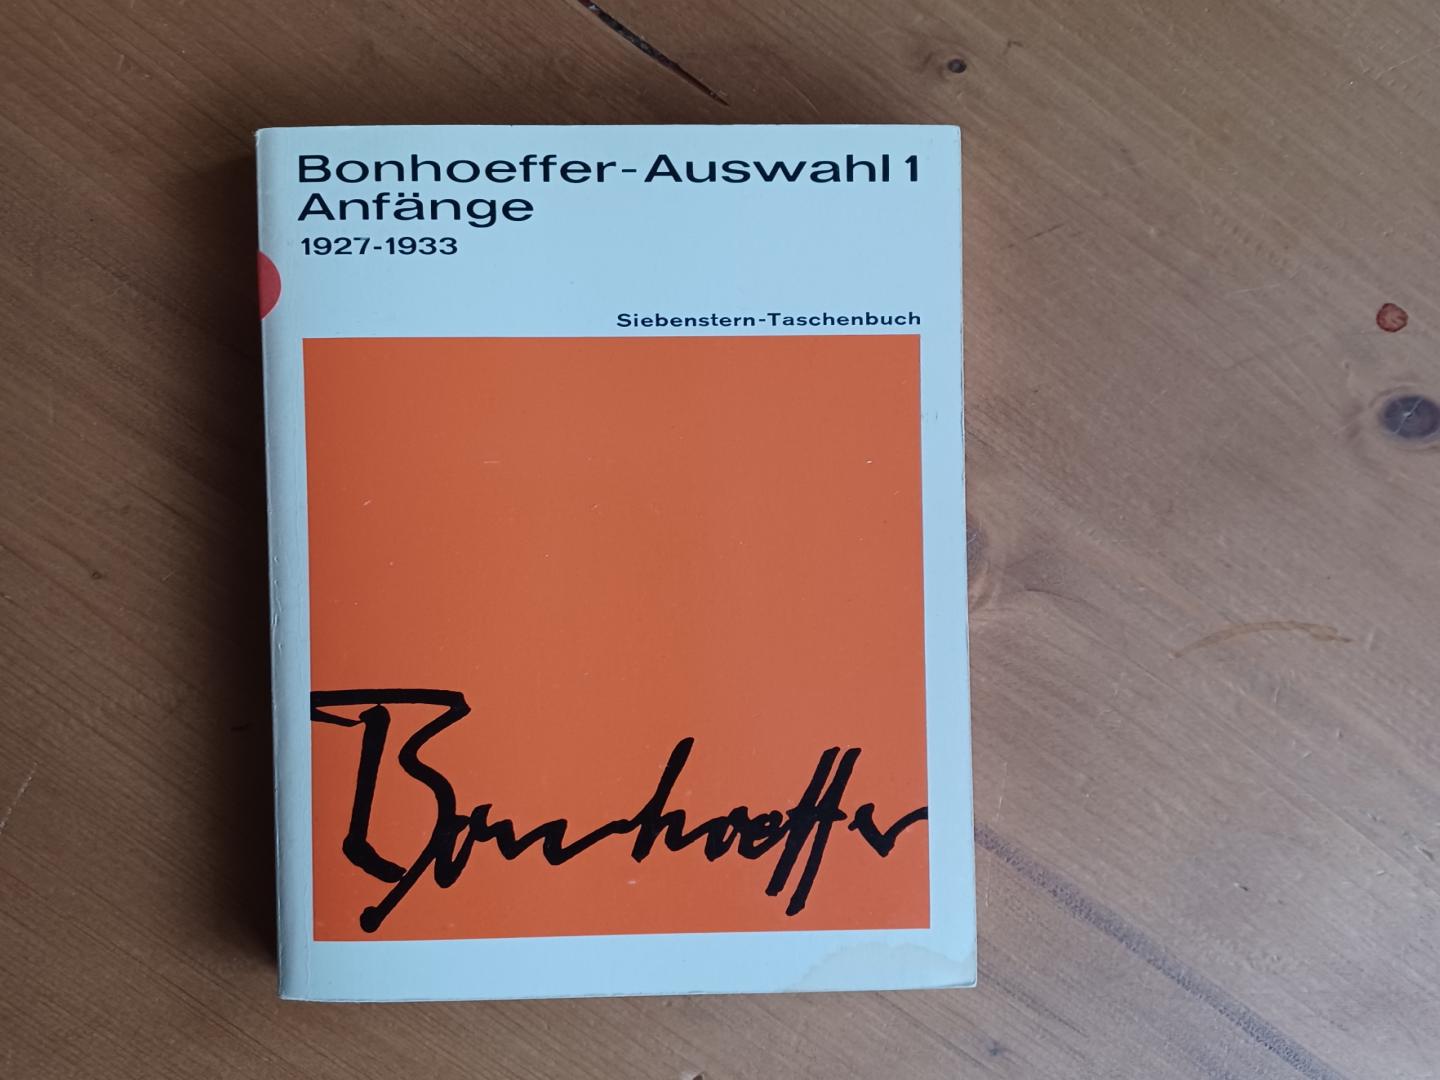 Bonhoeffer, Dietrich - Bonhoeffer-Auswahl 1 Anfänge 1927-1933